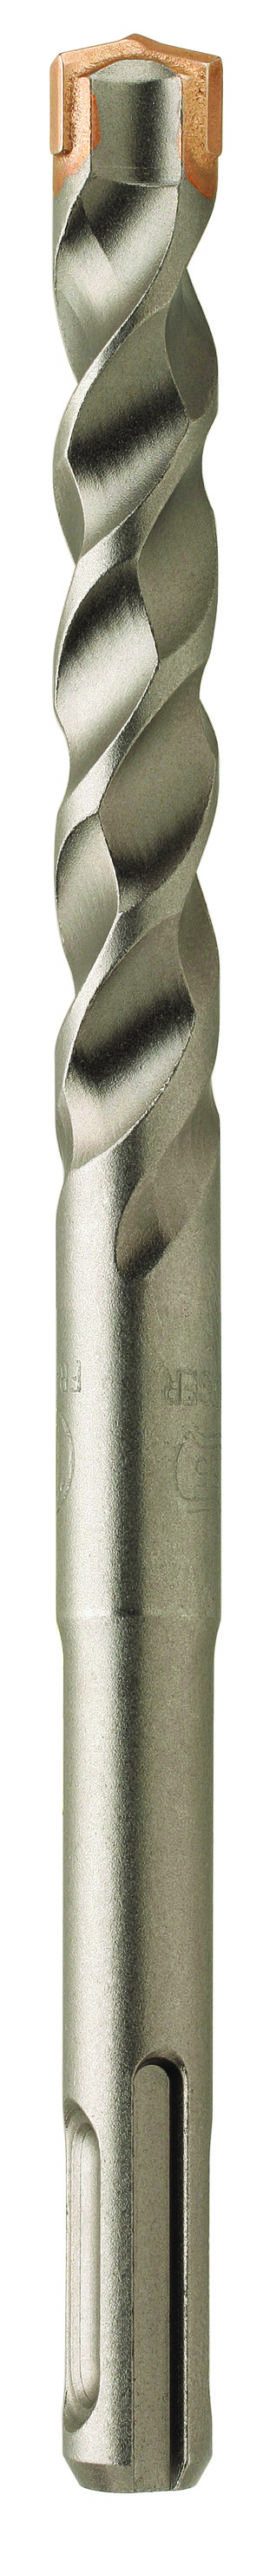 Conjunto de brocas Sds Plus, Broca de hormigón de 4 flautas, 7 piezas de  brocas de hormigón en tamaños de 5-12 x 160 mm, Taladro de mampostería  compatible con empuñadura Bosch